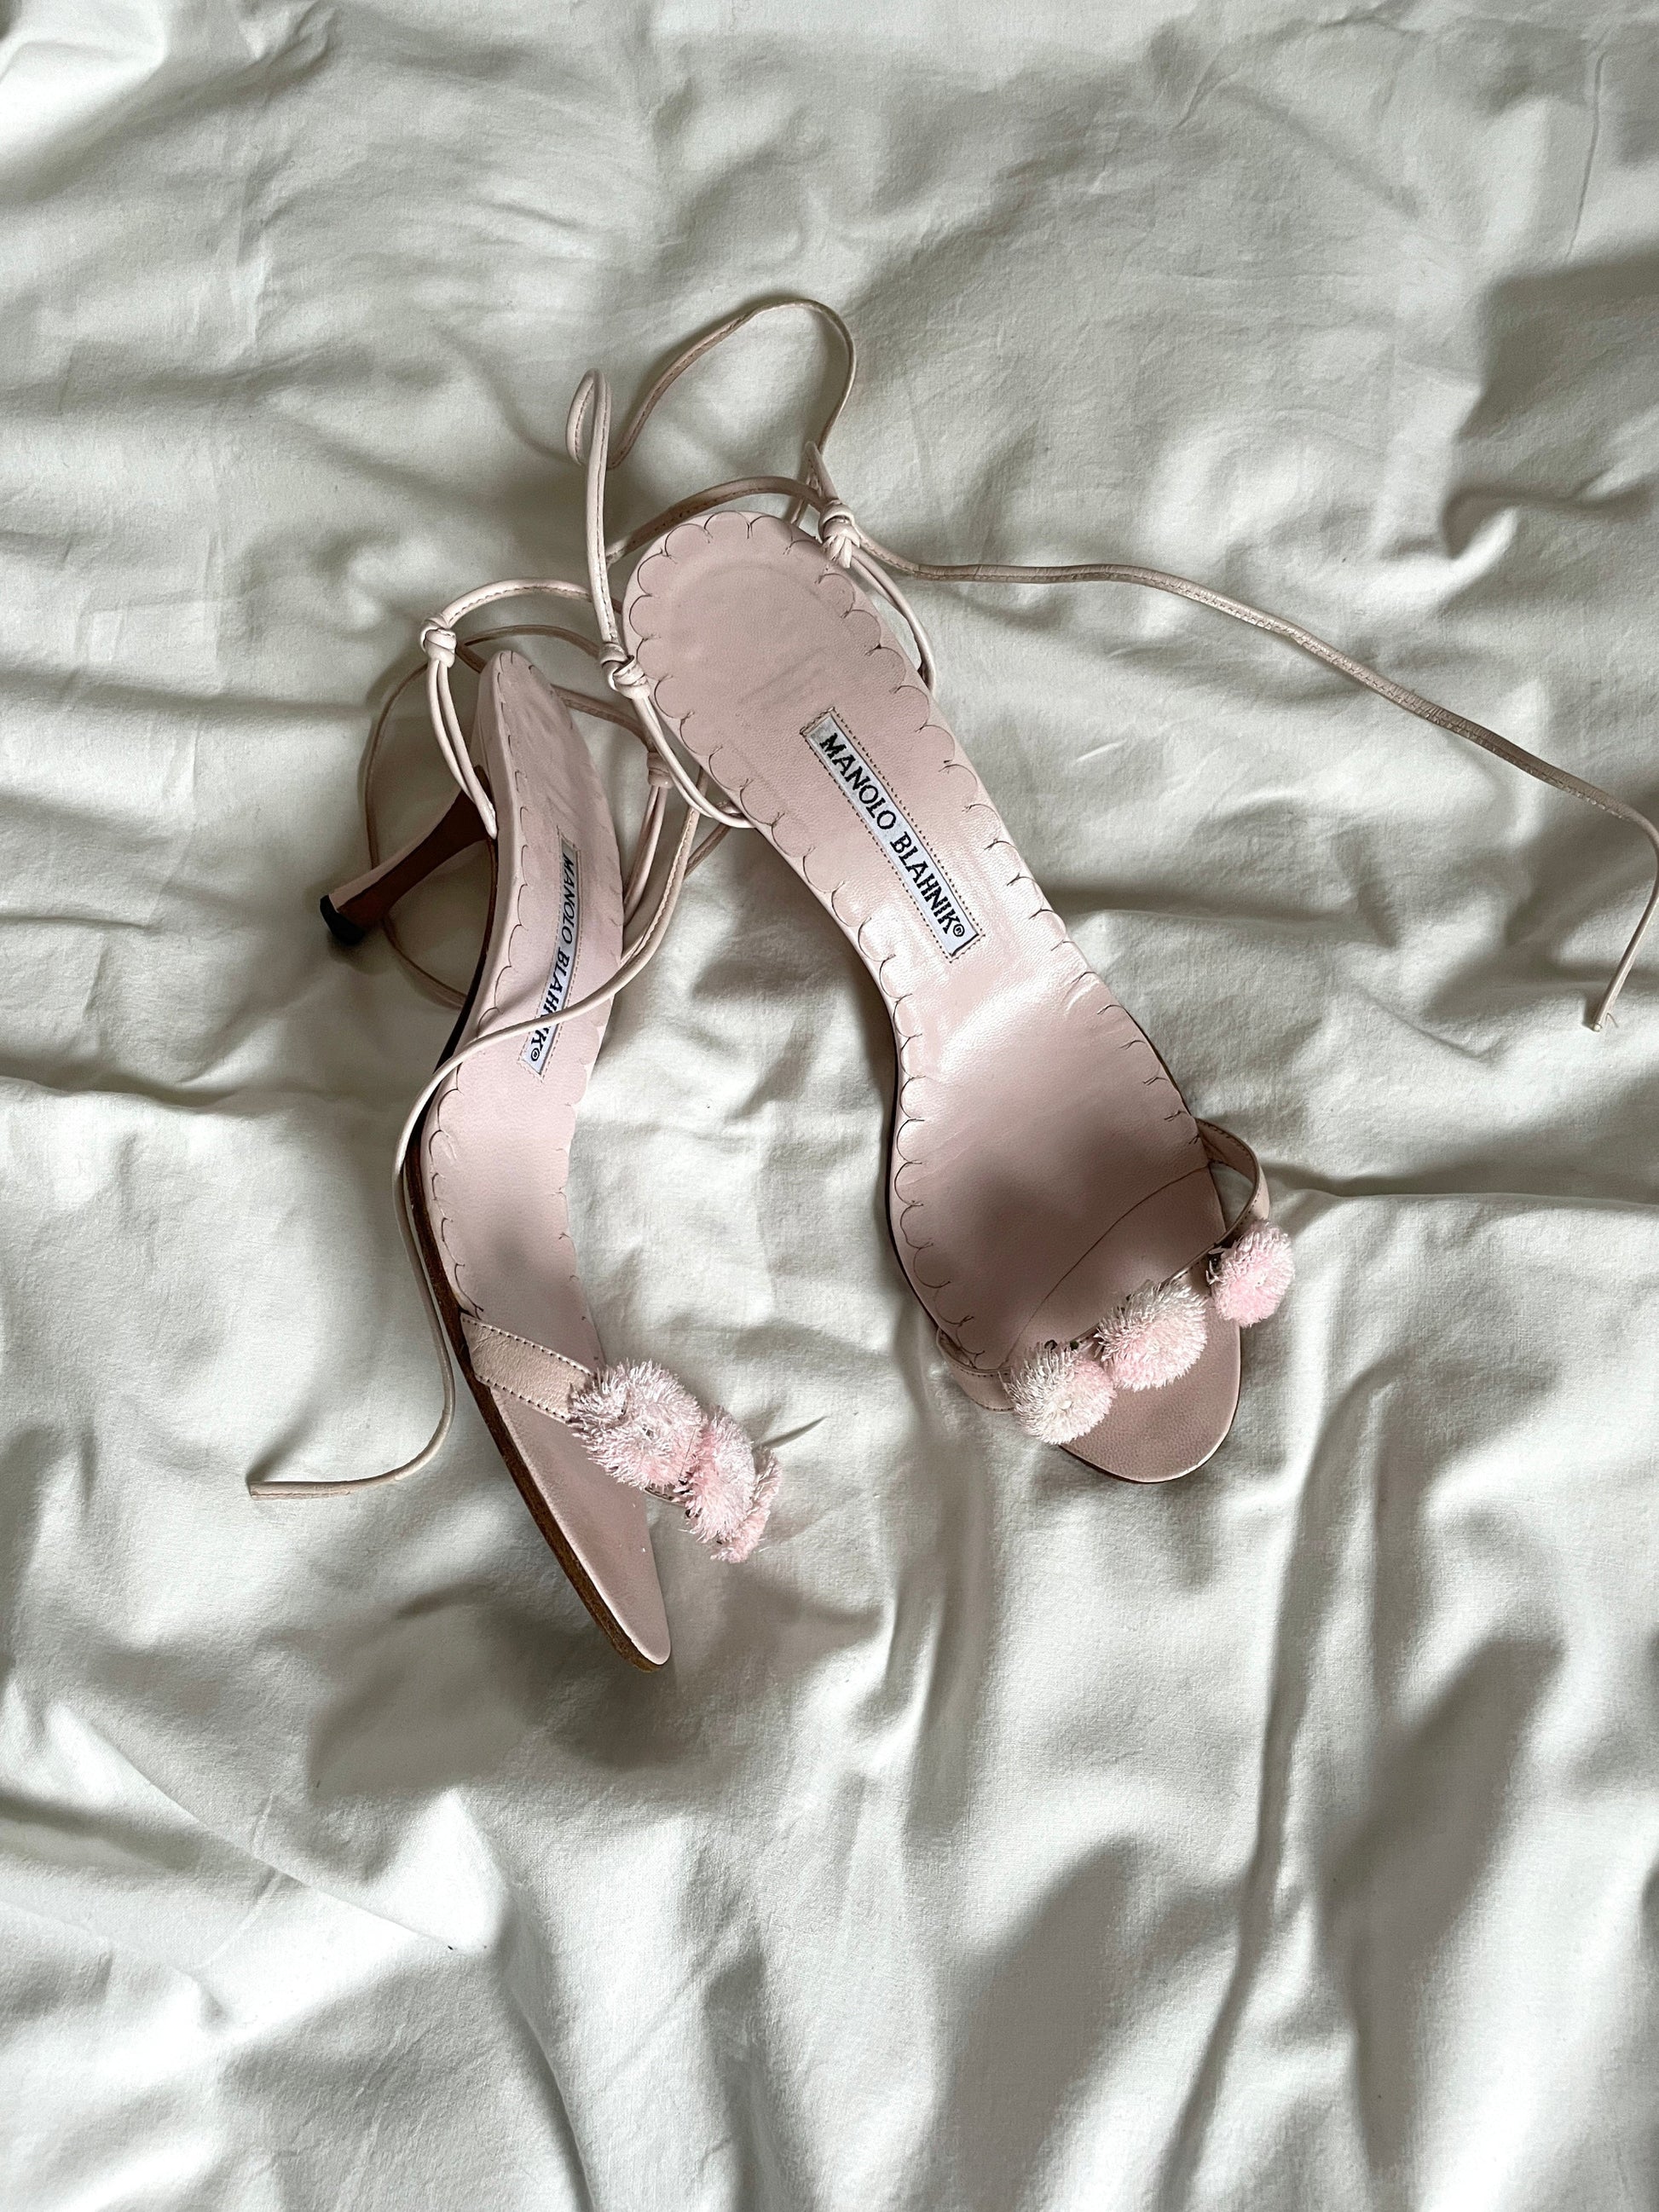 Manolo Blahnik pink floral heels